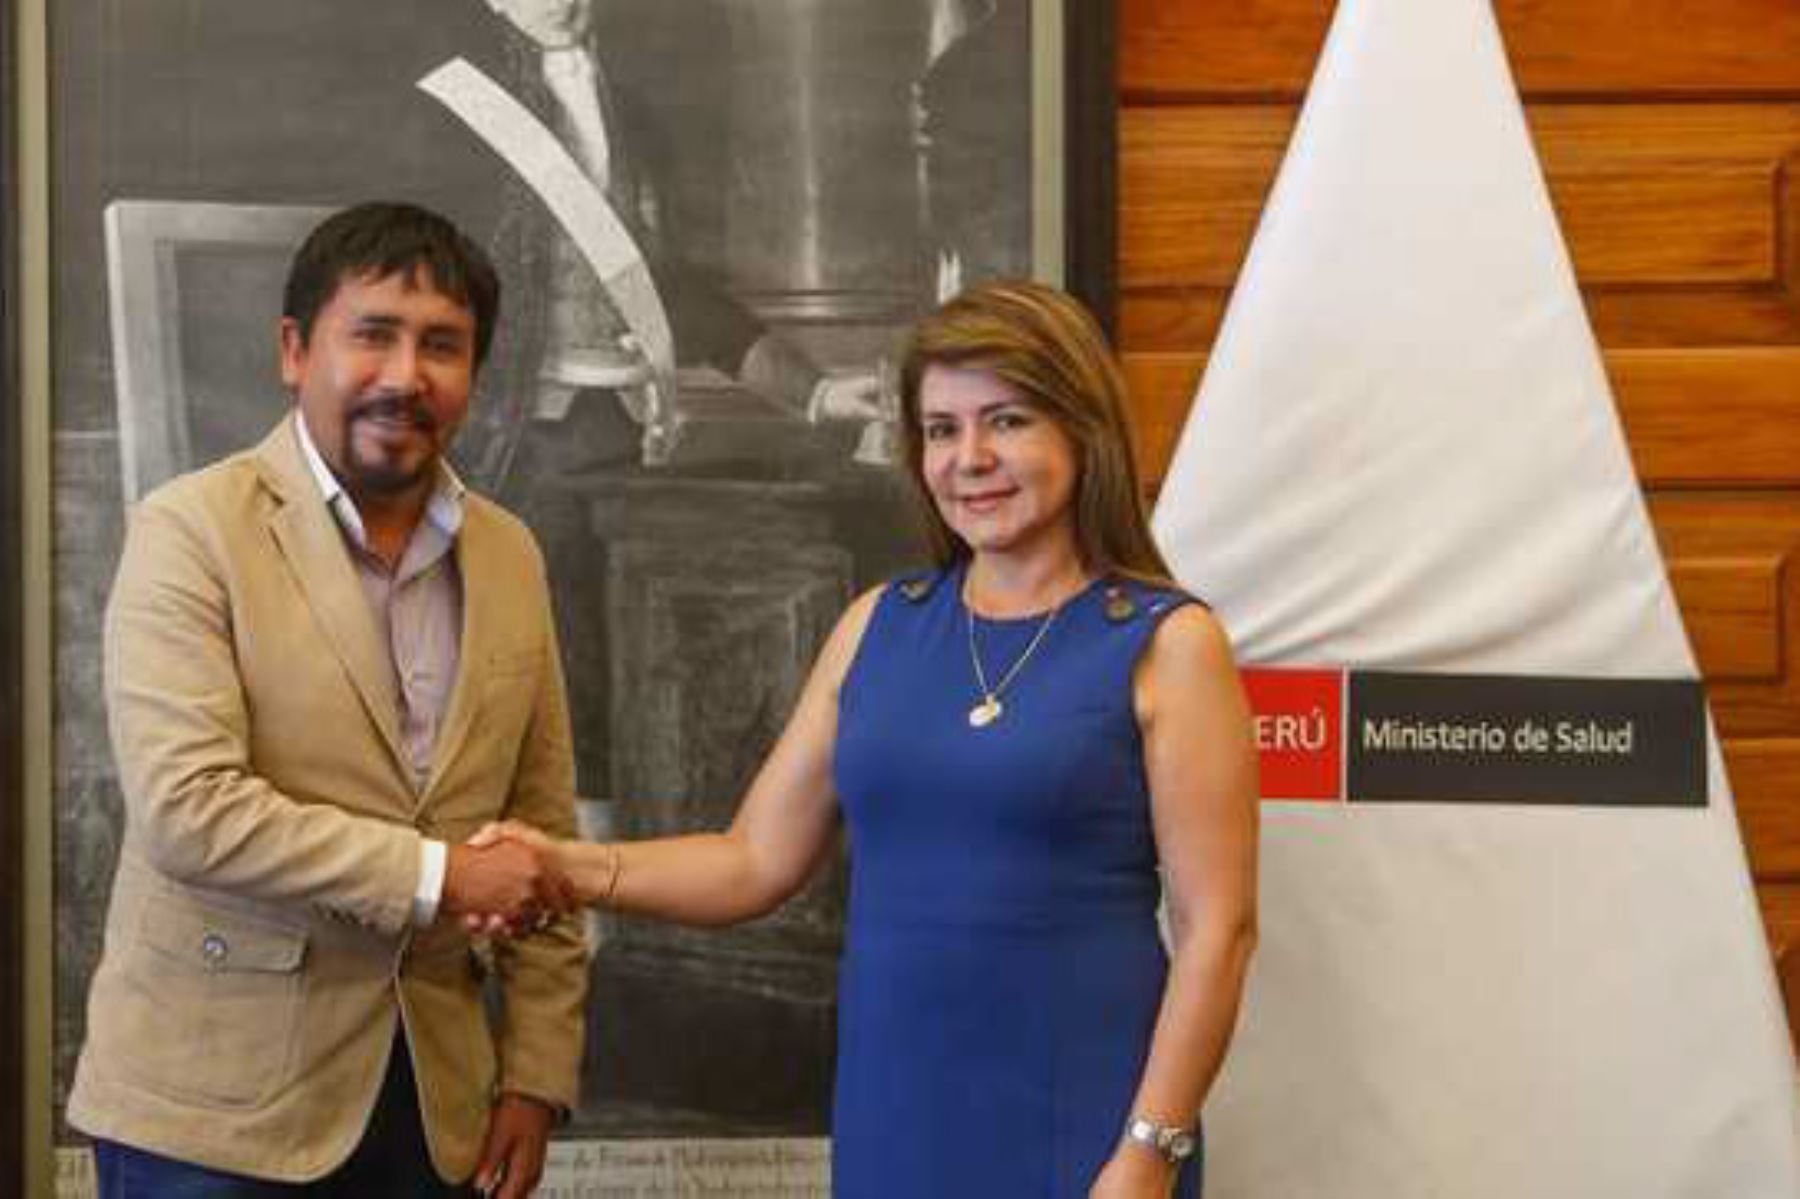 La ministra de Salud, Elizabeth Hinostroza Pereyra, se reunió con los gobernadores regionales de Arequipa y Junín.